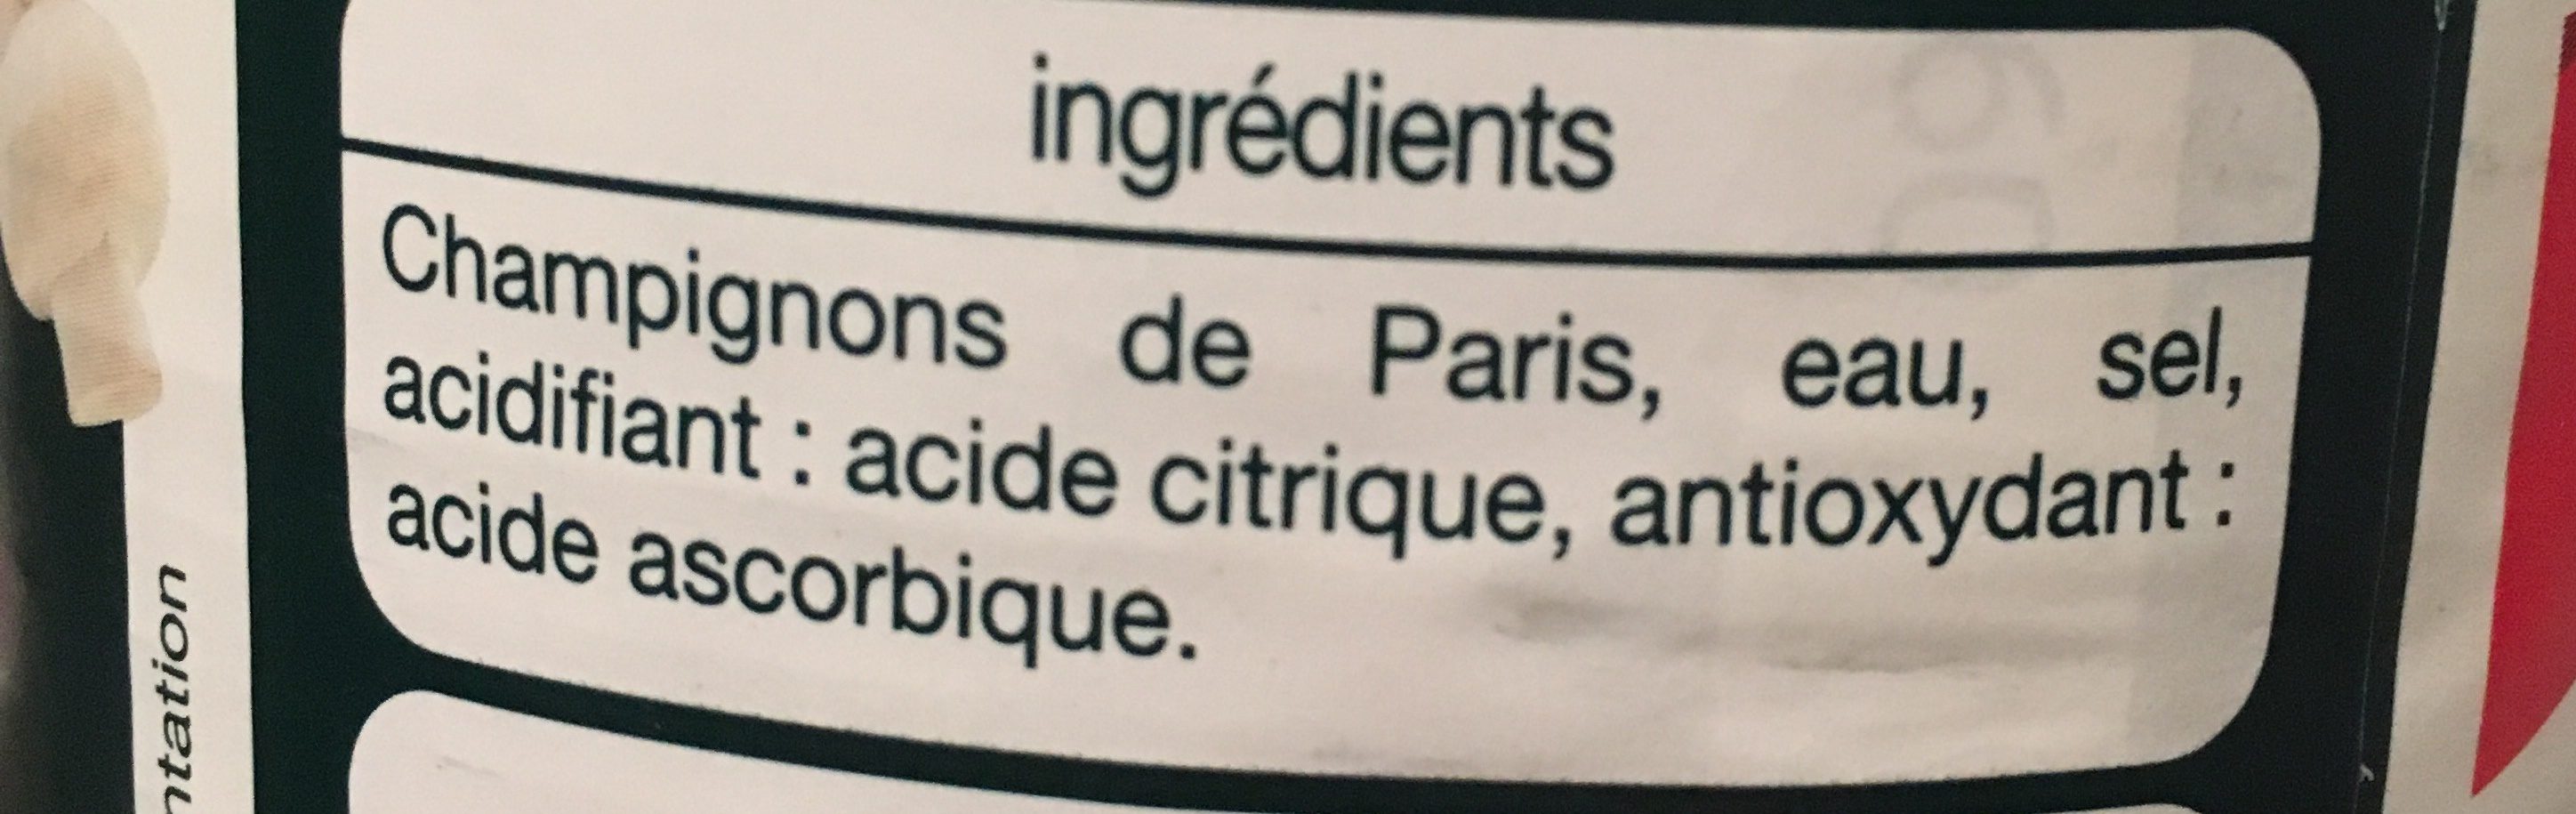 Champignons de paris - Ingredients - fr